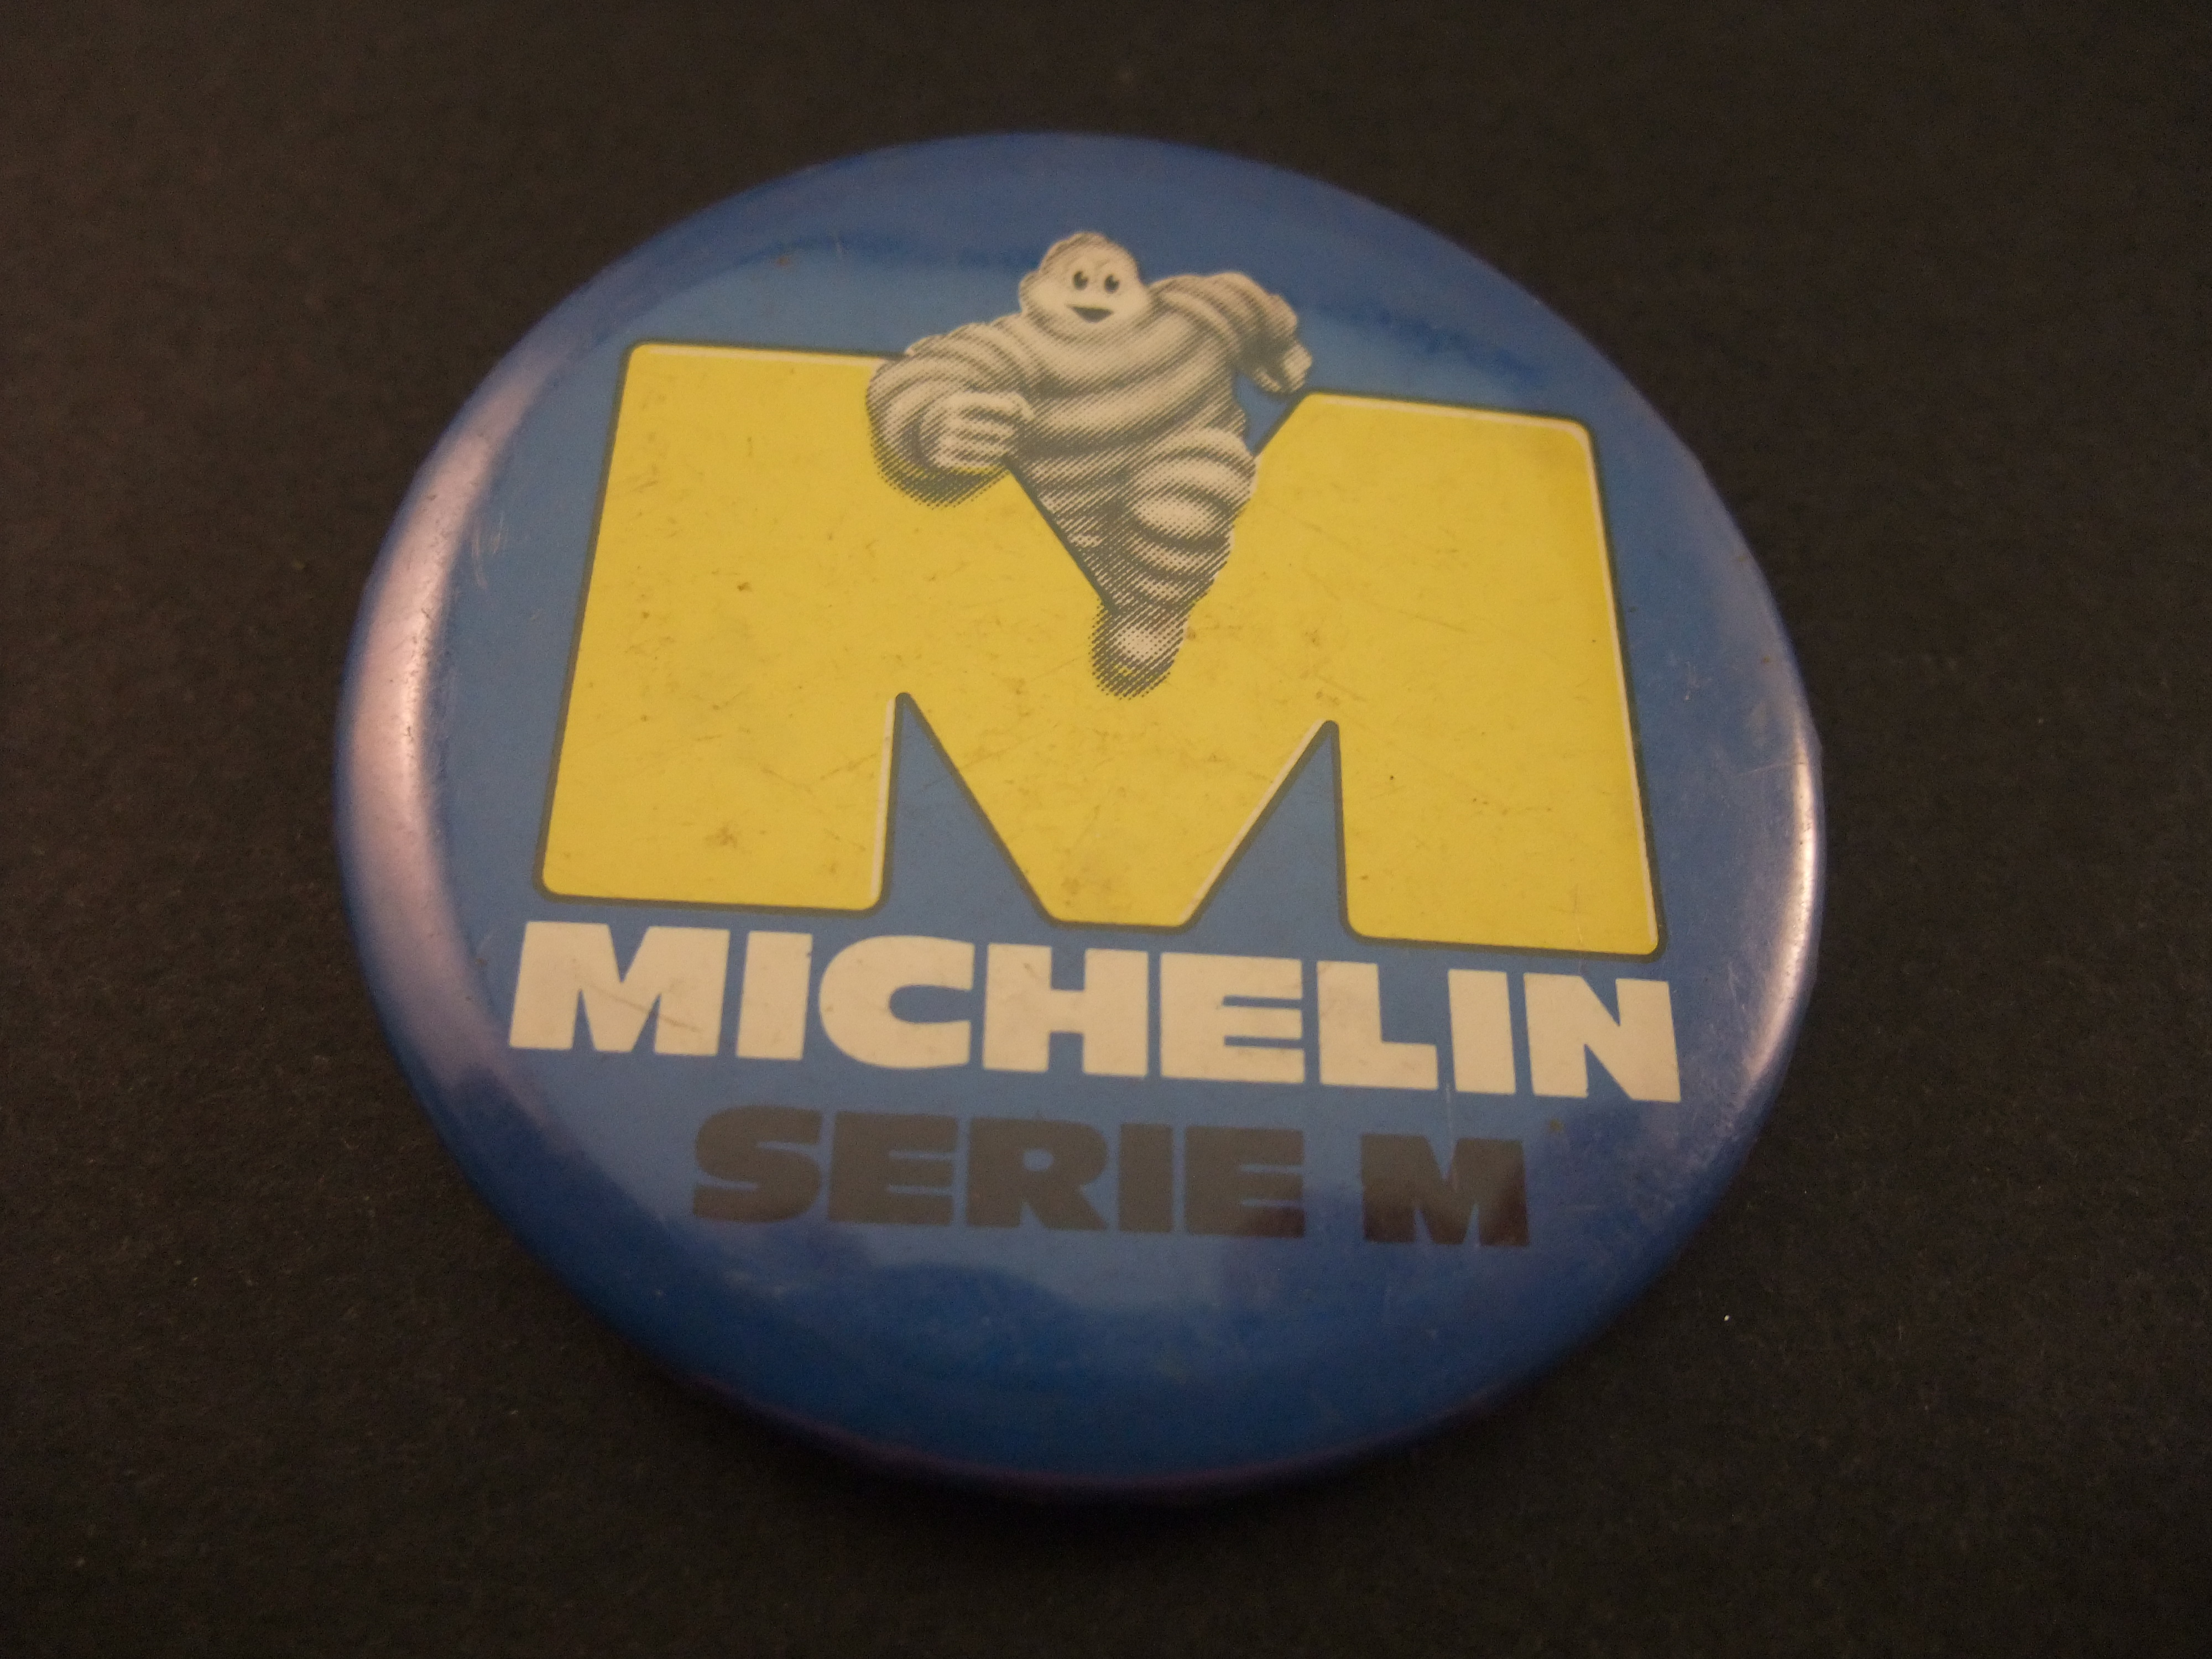 Michelin autobanden Bibendum figuur